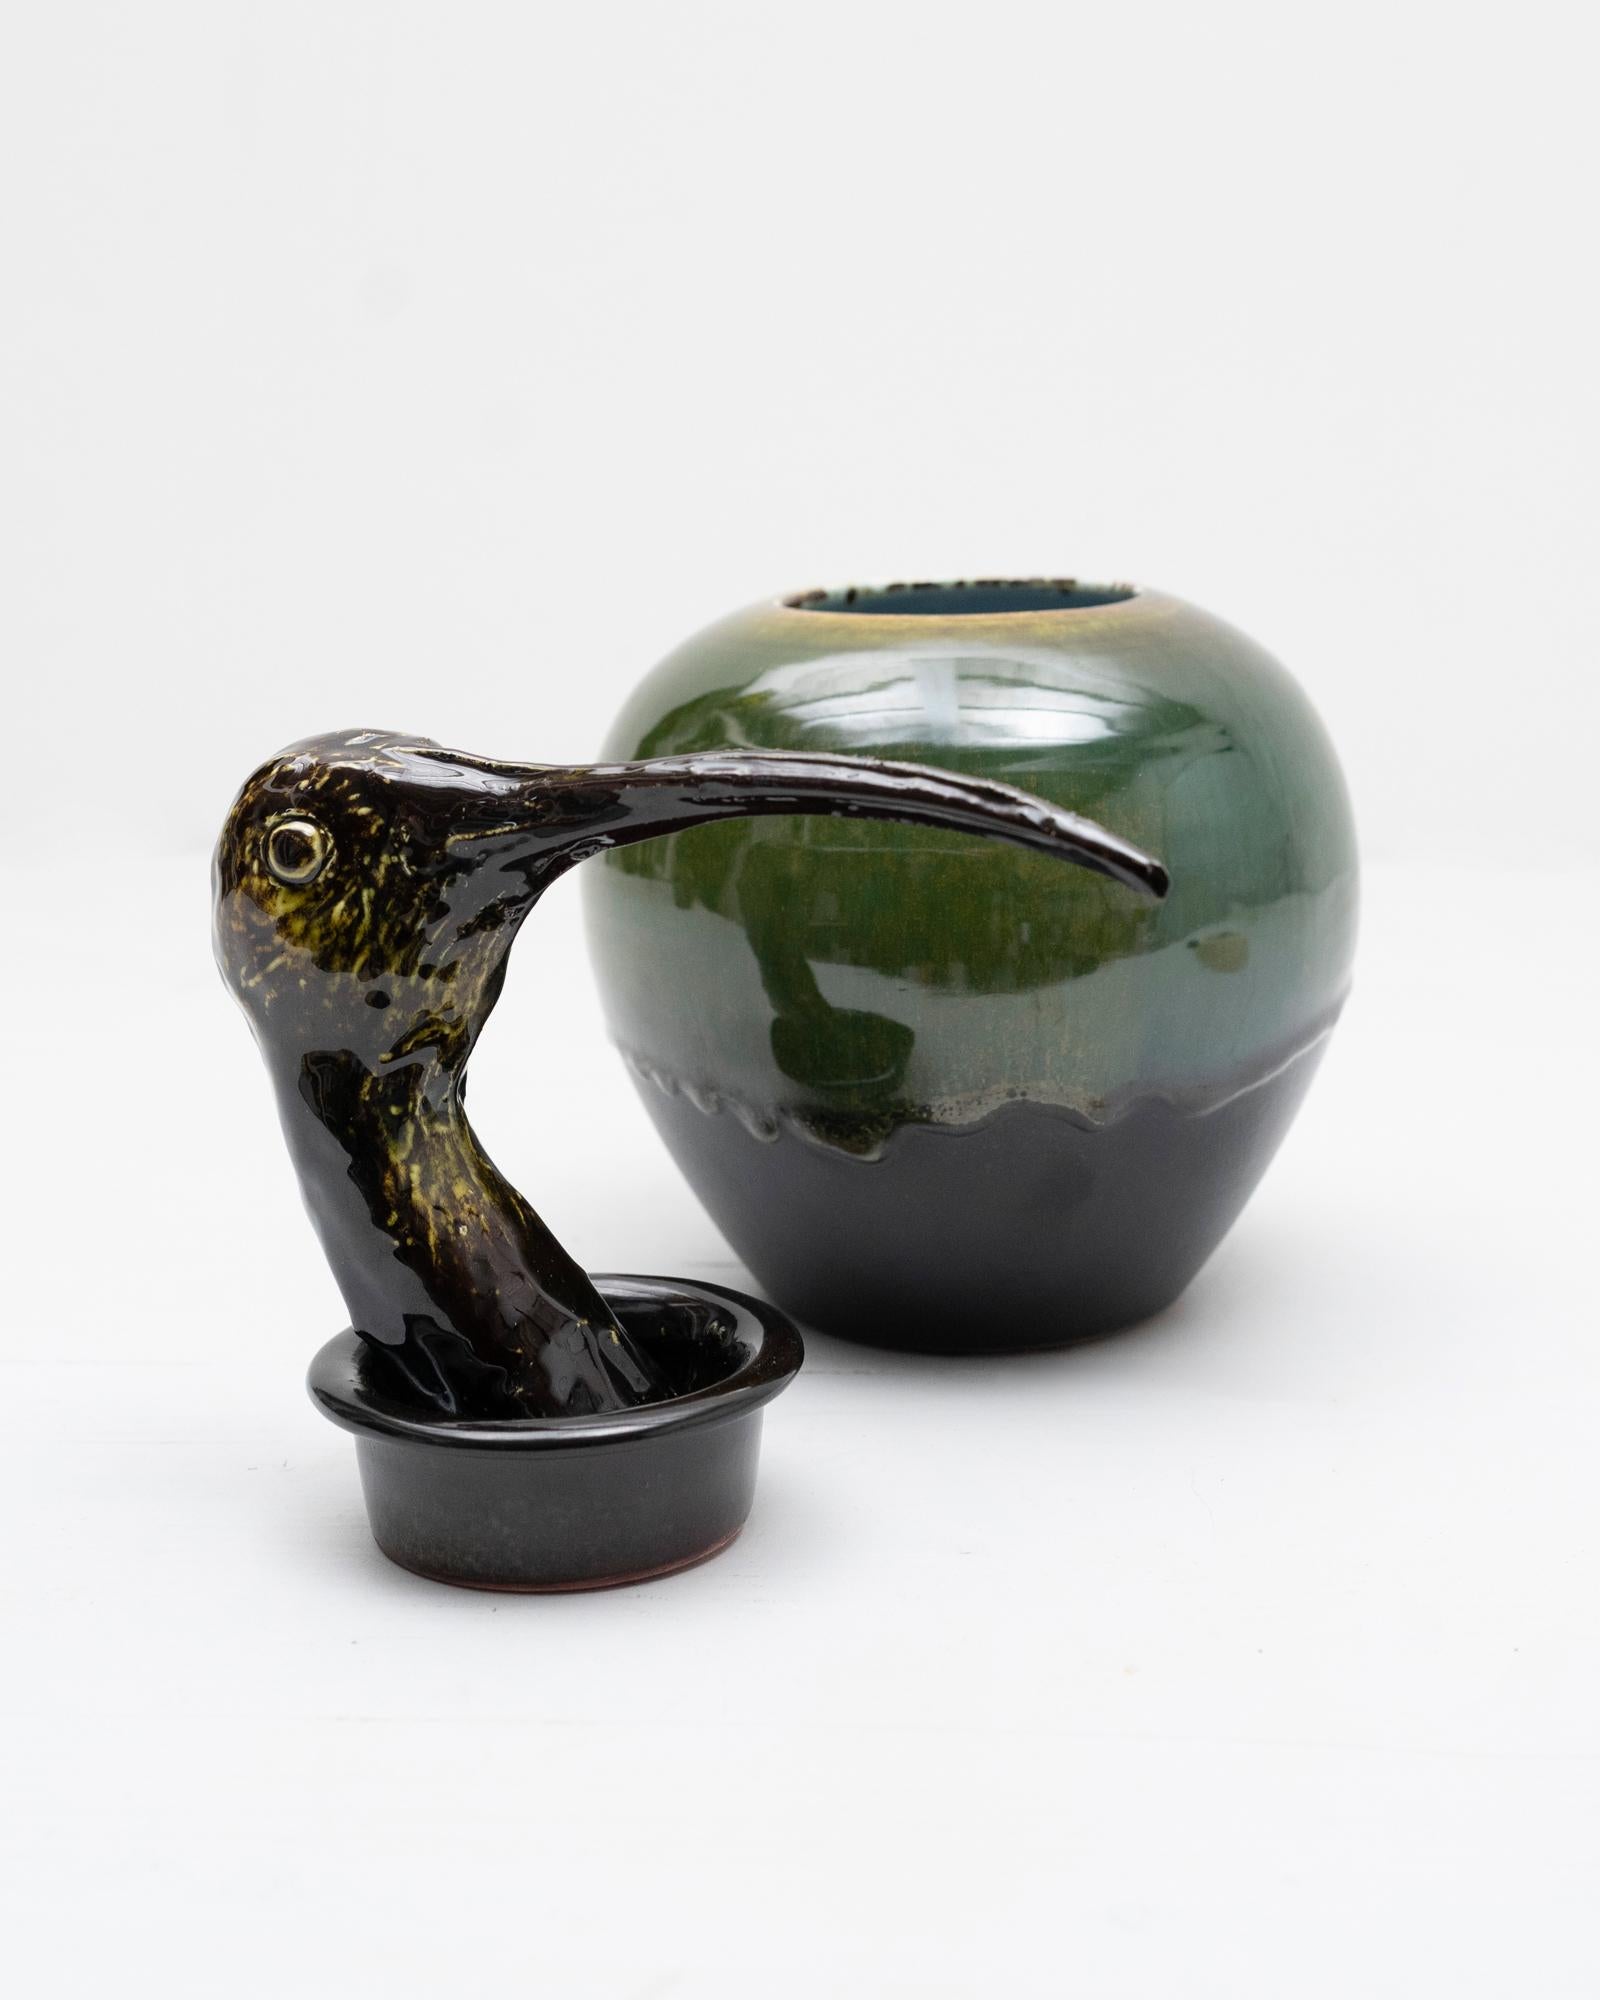 Questo vaso in ceramica disegnato e prodotto da Amaaro si ispira direttamente ai vasi canopi egizi; è una reinterpretazione ironica e contemporanea di un oggetto atavico, nume tutelare della quiete domestica. L'ibis era infatti un simbolo di purezza